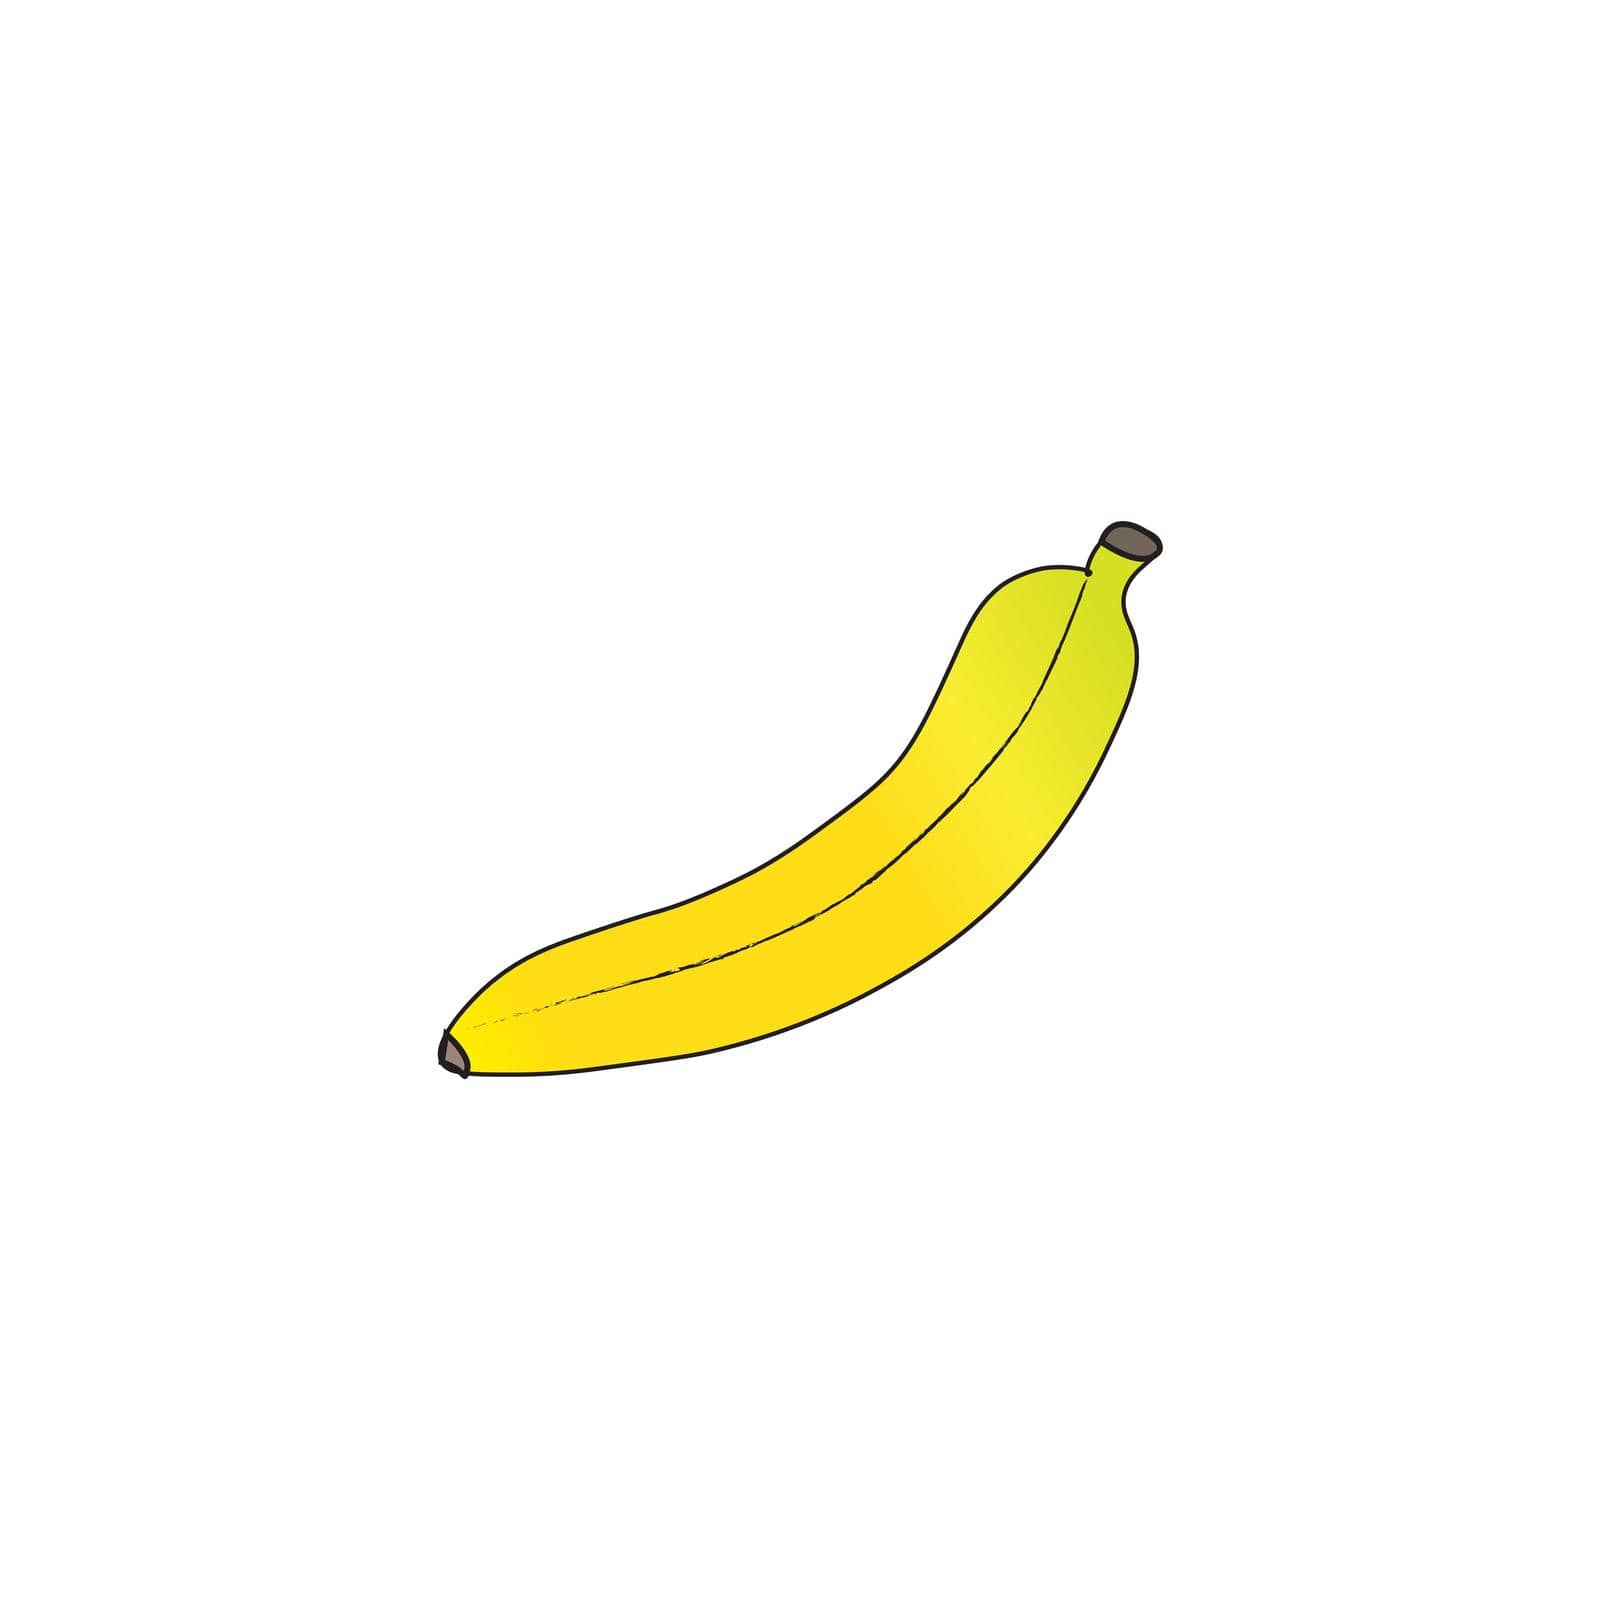 Banana logo template by katamsi